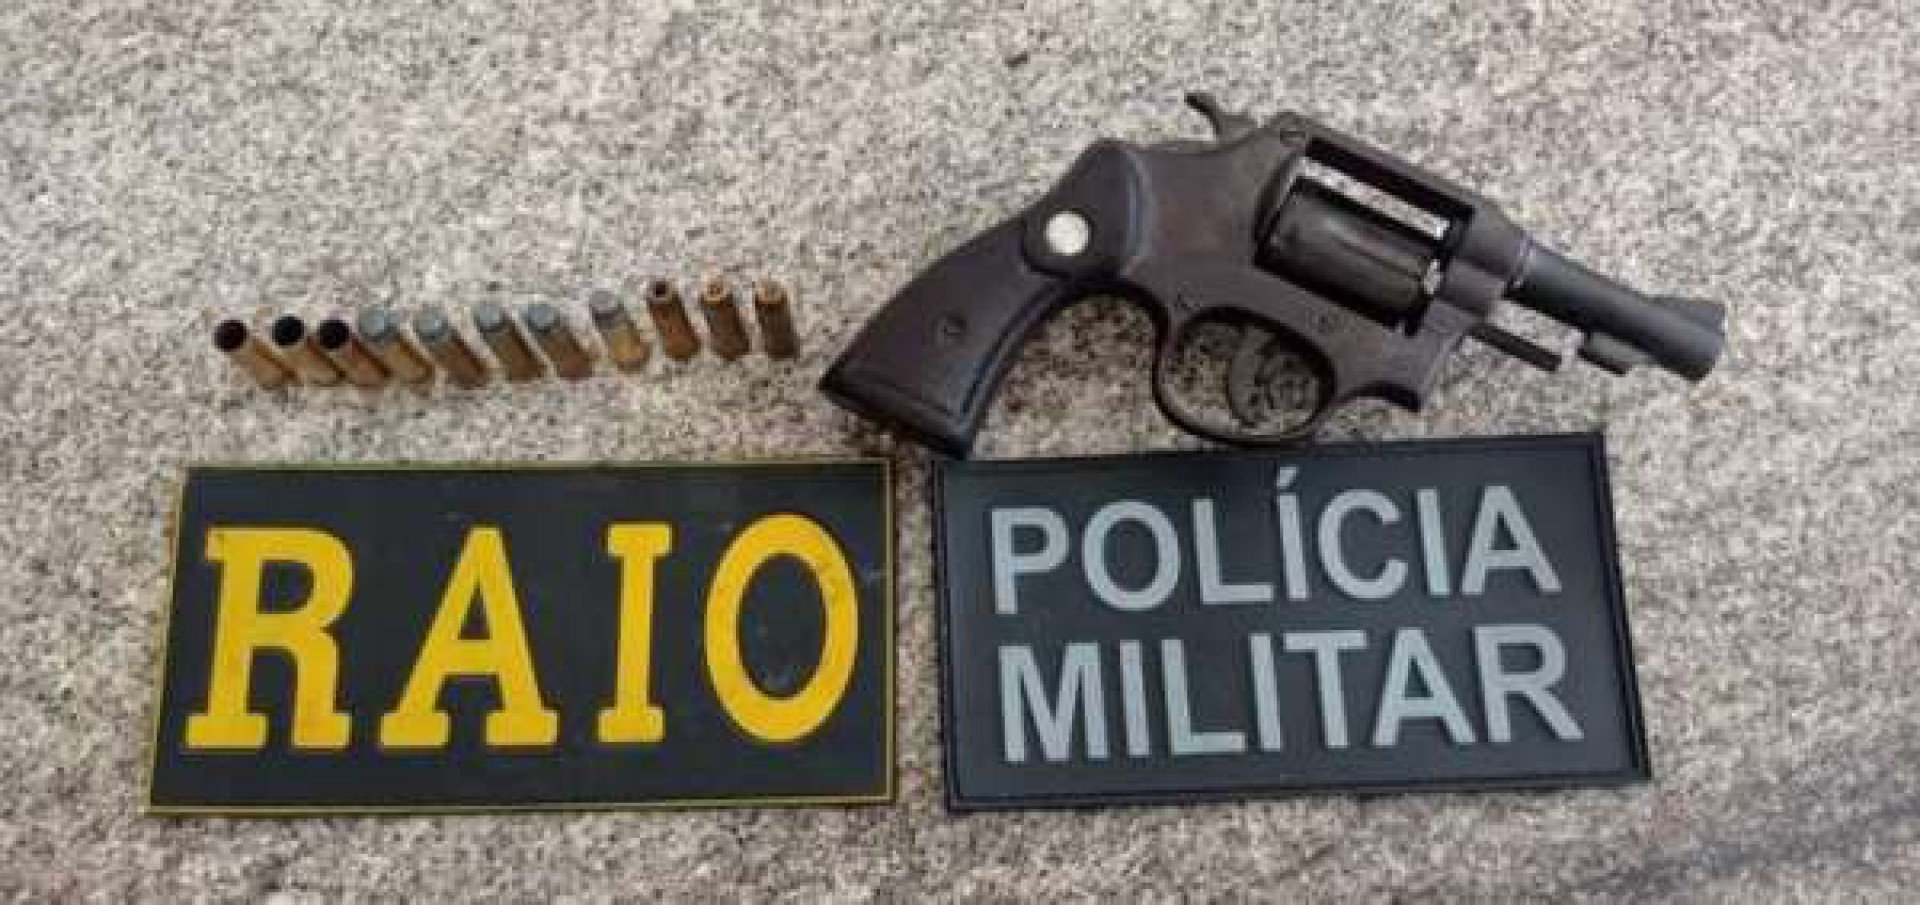 Após o crime, a arma, calibre 38, foi retida por outros familiares e entregue aos policiais militares - Divulgação/Polícia Militar